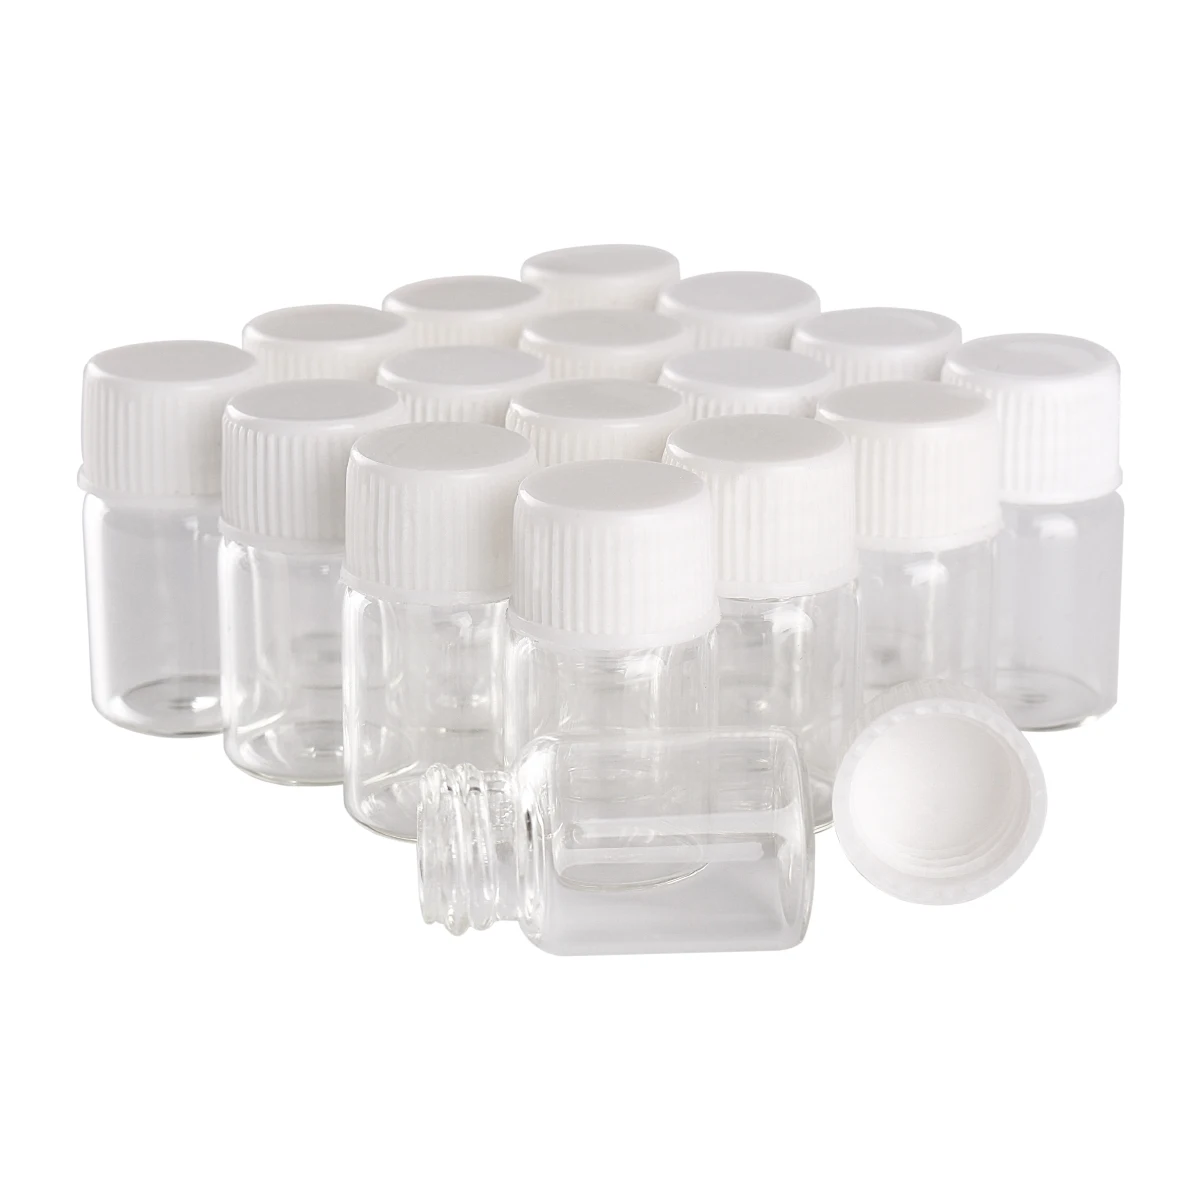 Commercio all'ingrosso 100 pezzi 2ml 16*26mm bottiglie di vetro vuote con tappi di plastica bianchi Mini bottiglie di vetro piccoli vasetti fiale